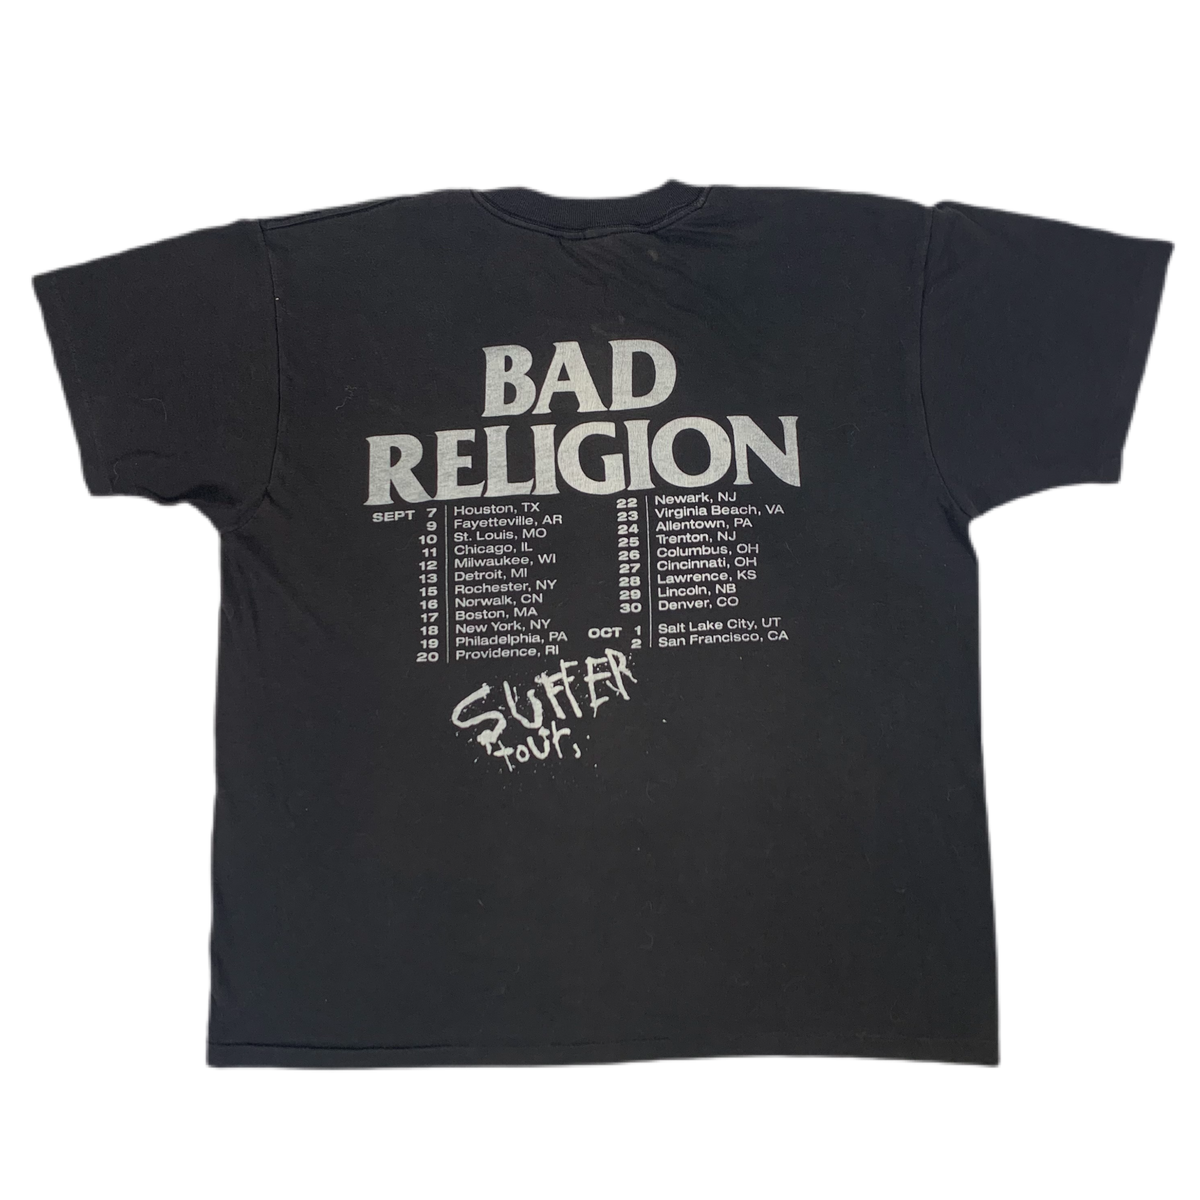 Vintage Bad Religion &quot;Suffer&quot; Tour T-Shirt